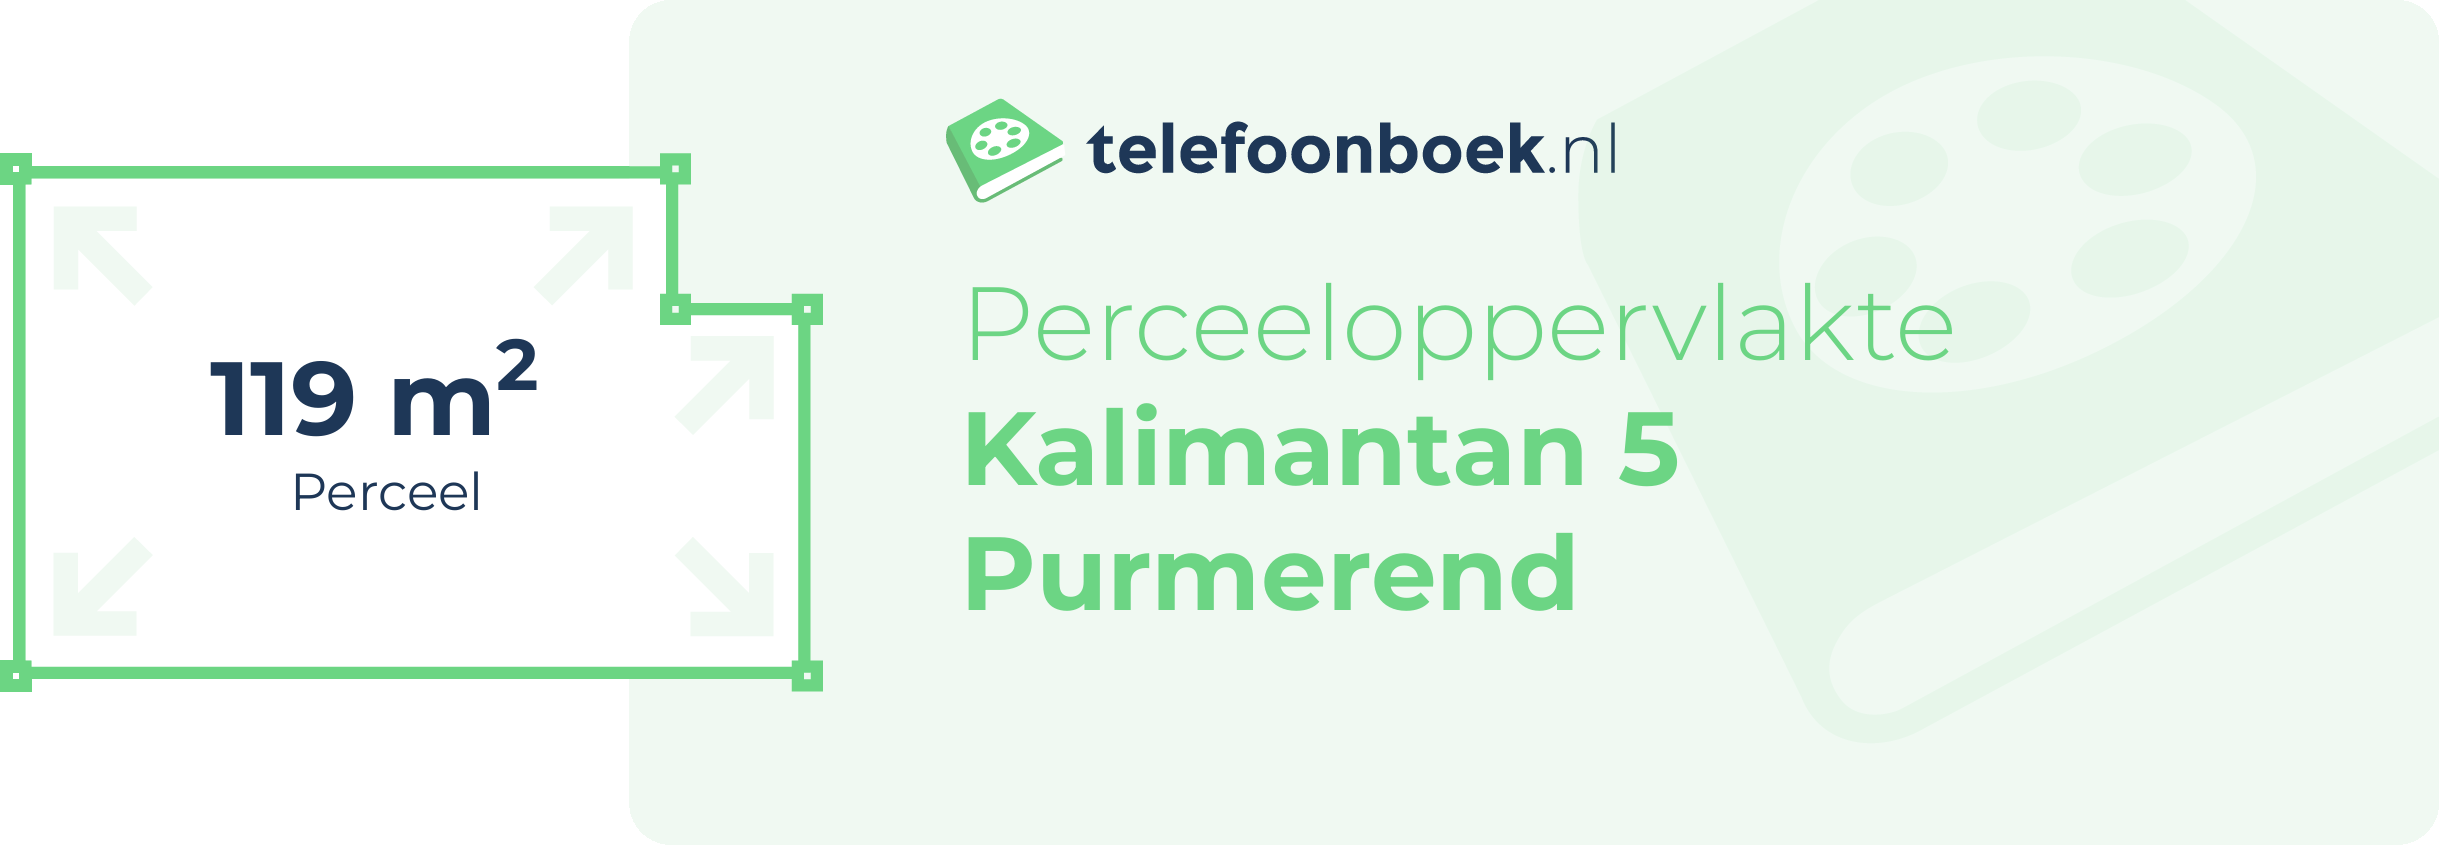 Perceeloppervlakte Kalimantan 5 Purmerend